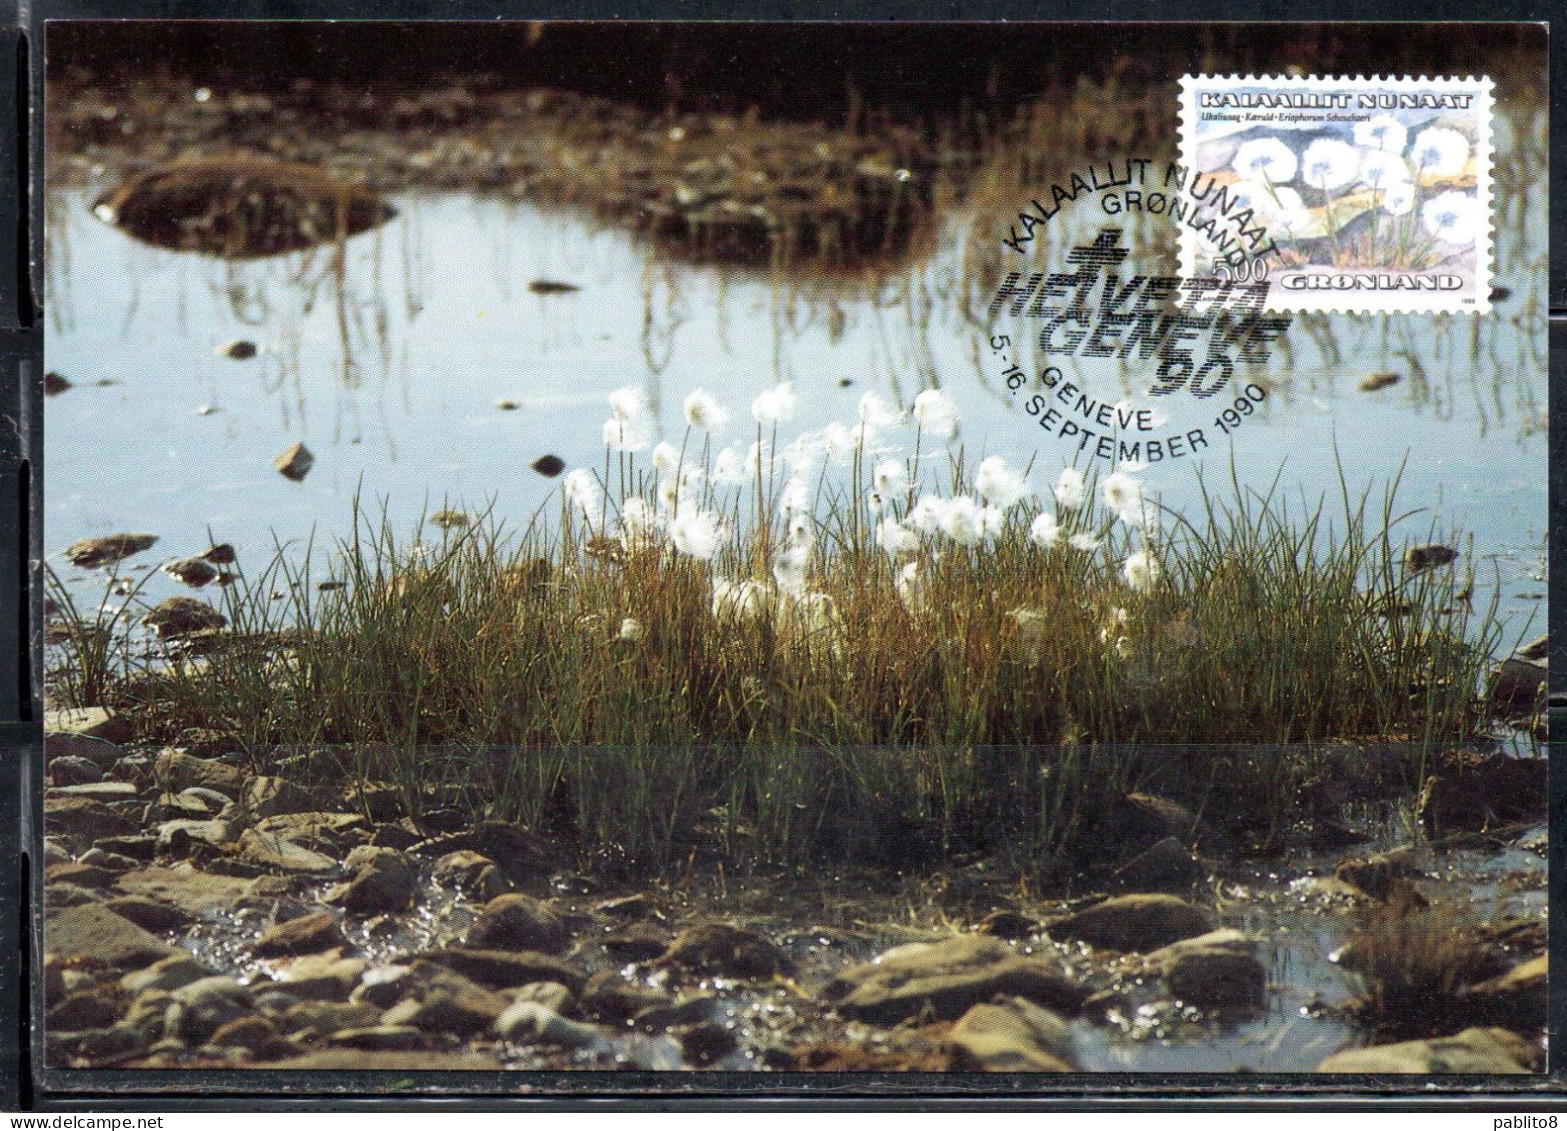 GREENLAND GRONLANDS GROENLANDIA GRØNLAND 1989 1992 1990 FLORA PLANTS ERIOPHORUM SCHEUCHZERI 5k MAXI MAXIMUM CARD CARTE - Maximumkarten (MC)